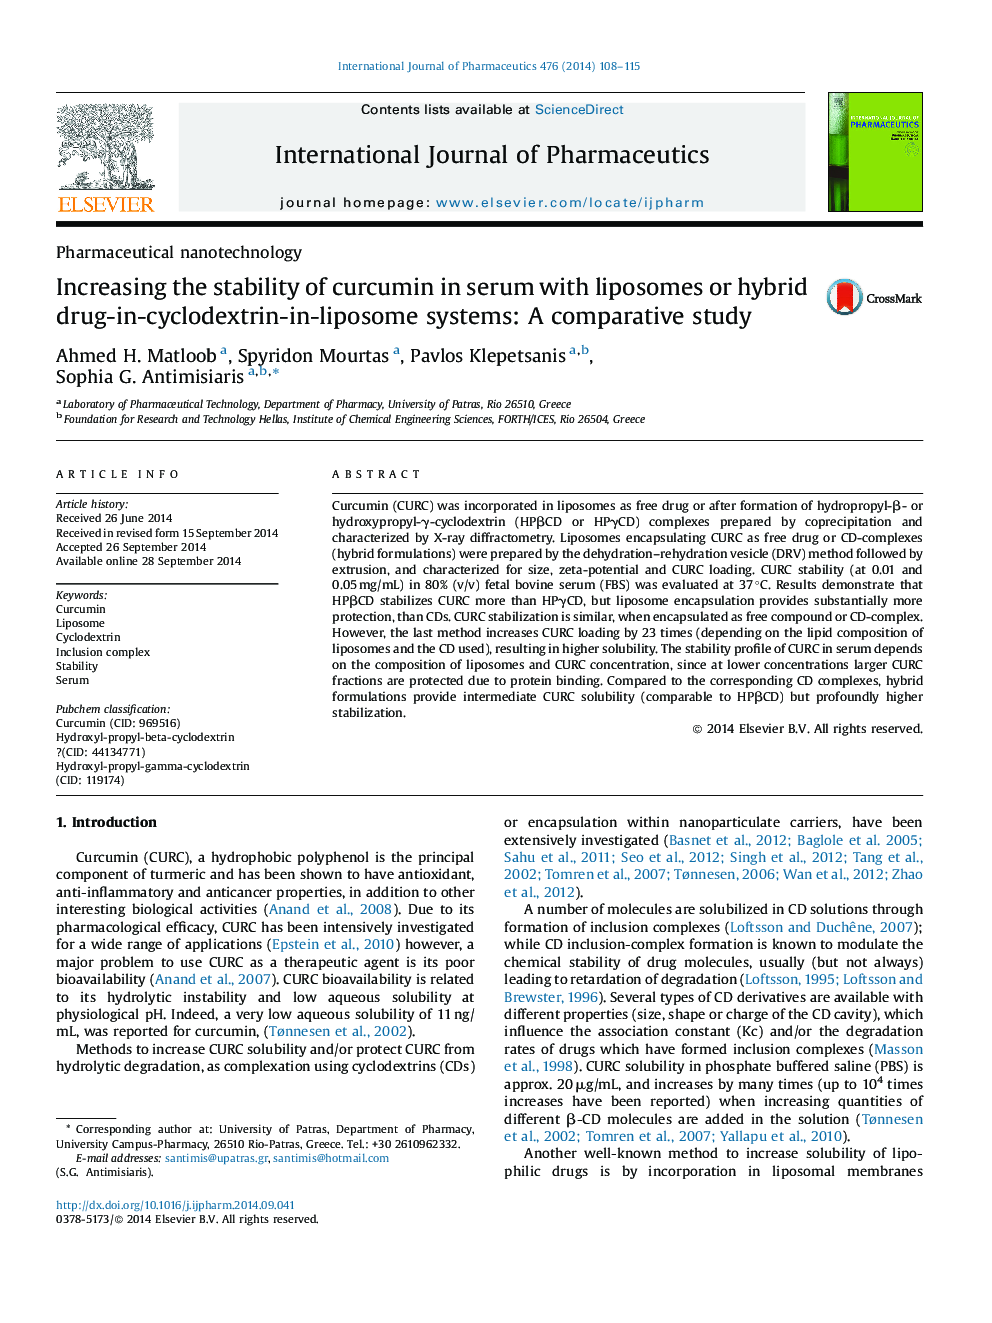 افزایش پایداری کورکومین در سرم با لیپوزوم ها یا سیستم های ترکیبی دارو در داخل سیکلوکودکسترون در لیپوزوم: یک مطالعه مقایسه ای 